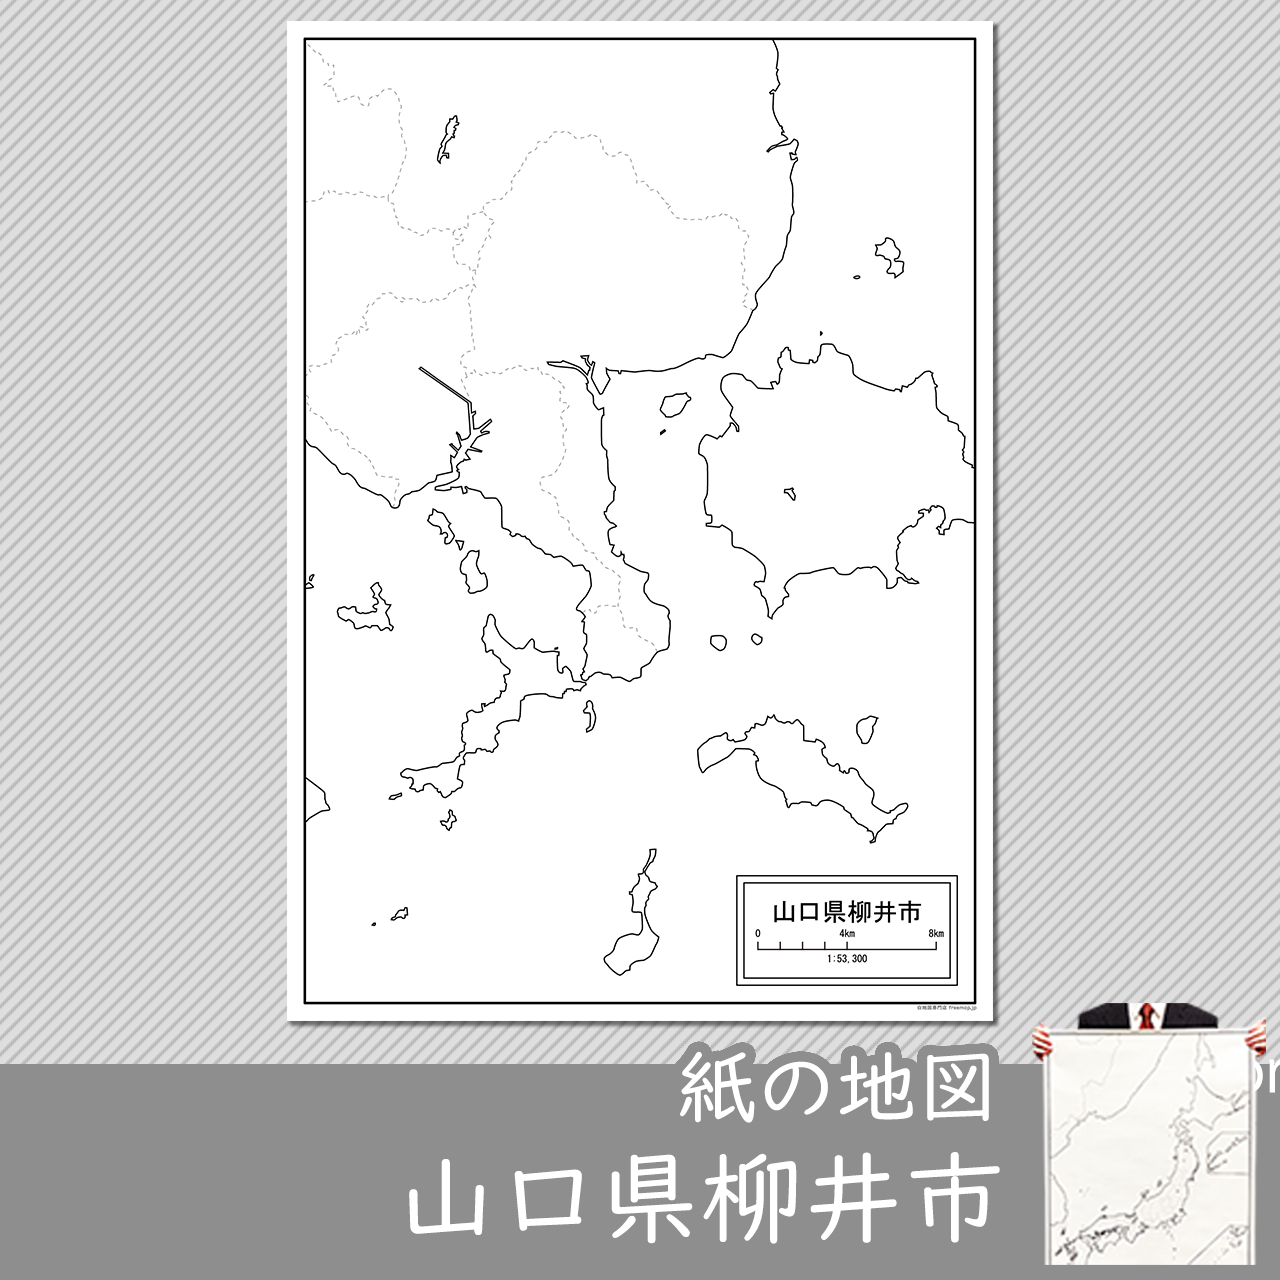 柳井市の紙の白地図のサムネイル